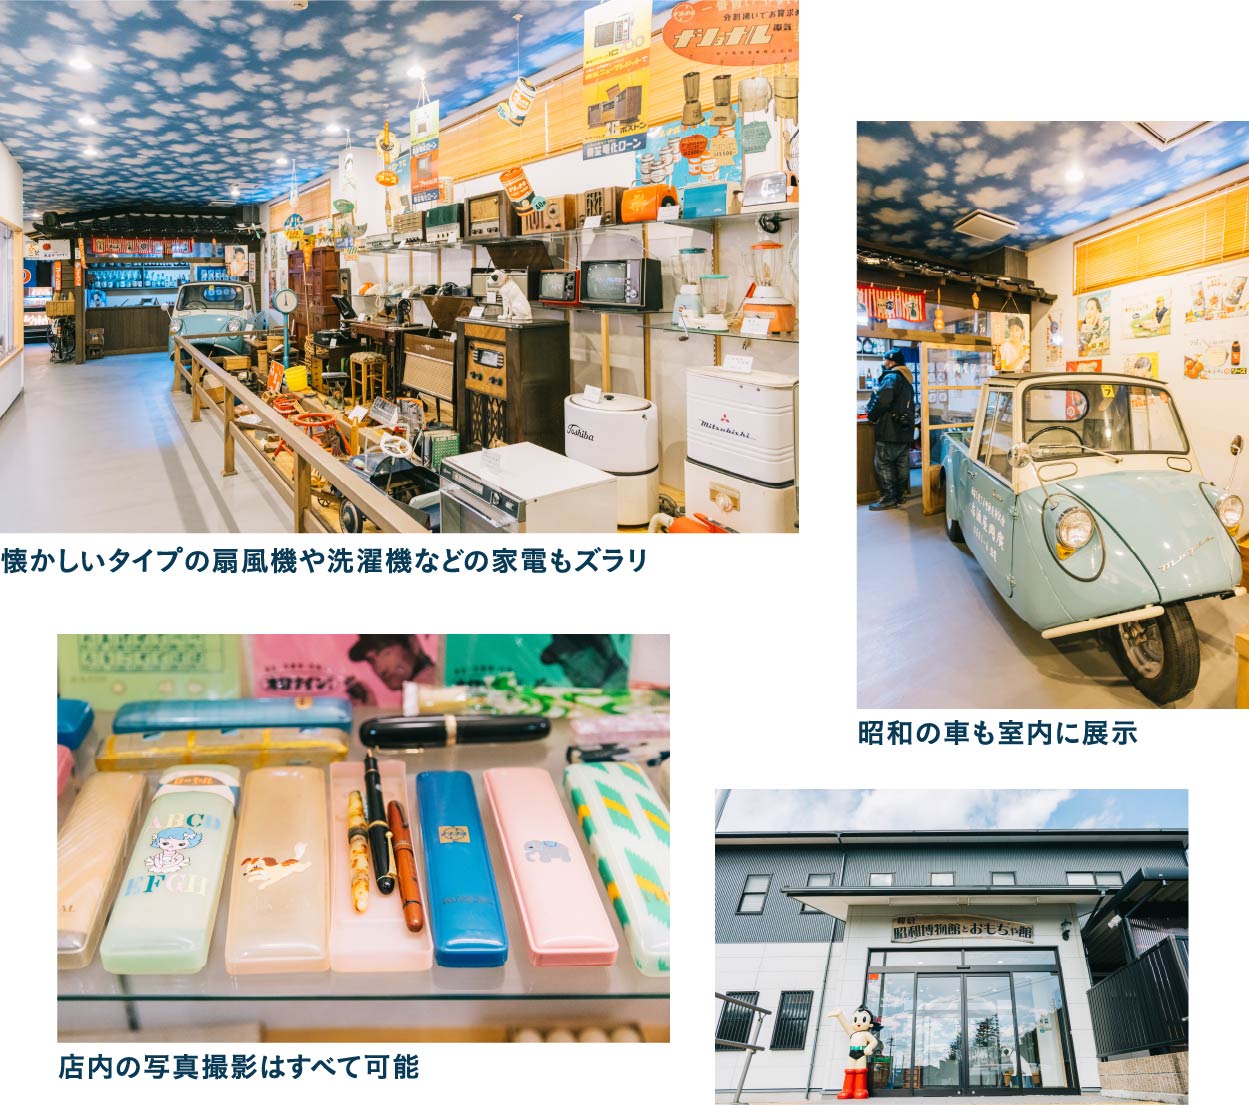 レトロなおもちゃに囲まれて和倉昭和博物館とおもちゃ館で昭和時代にタイムスリップ